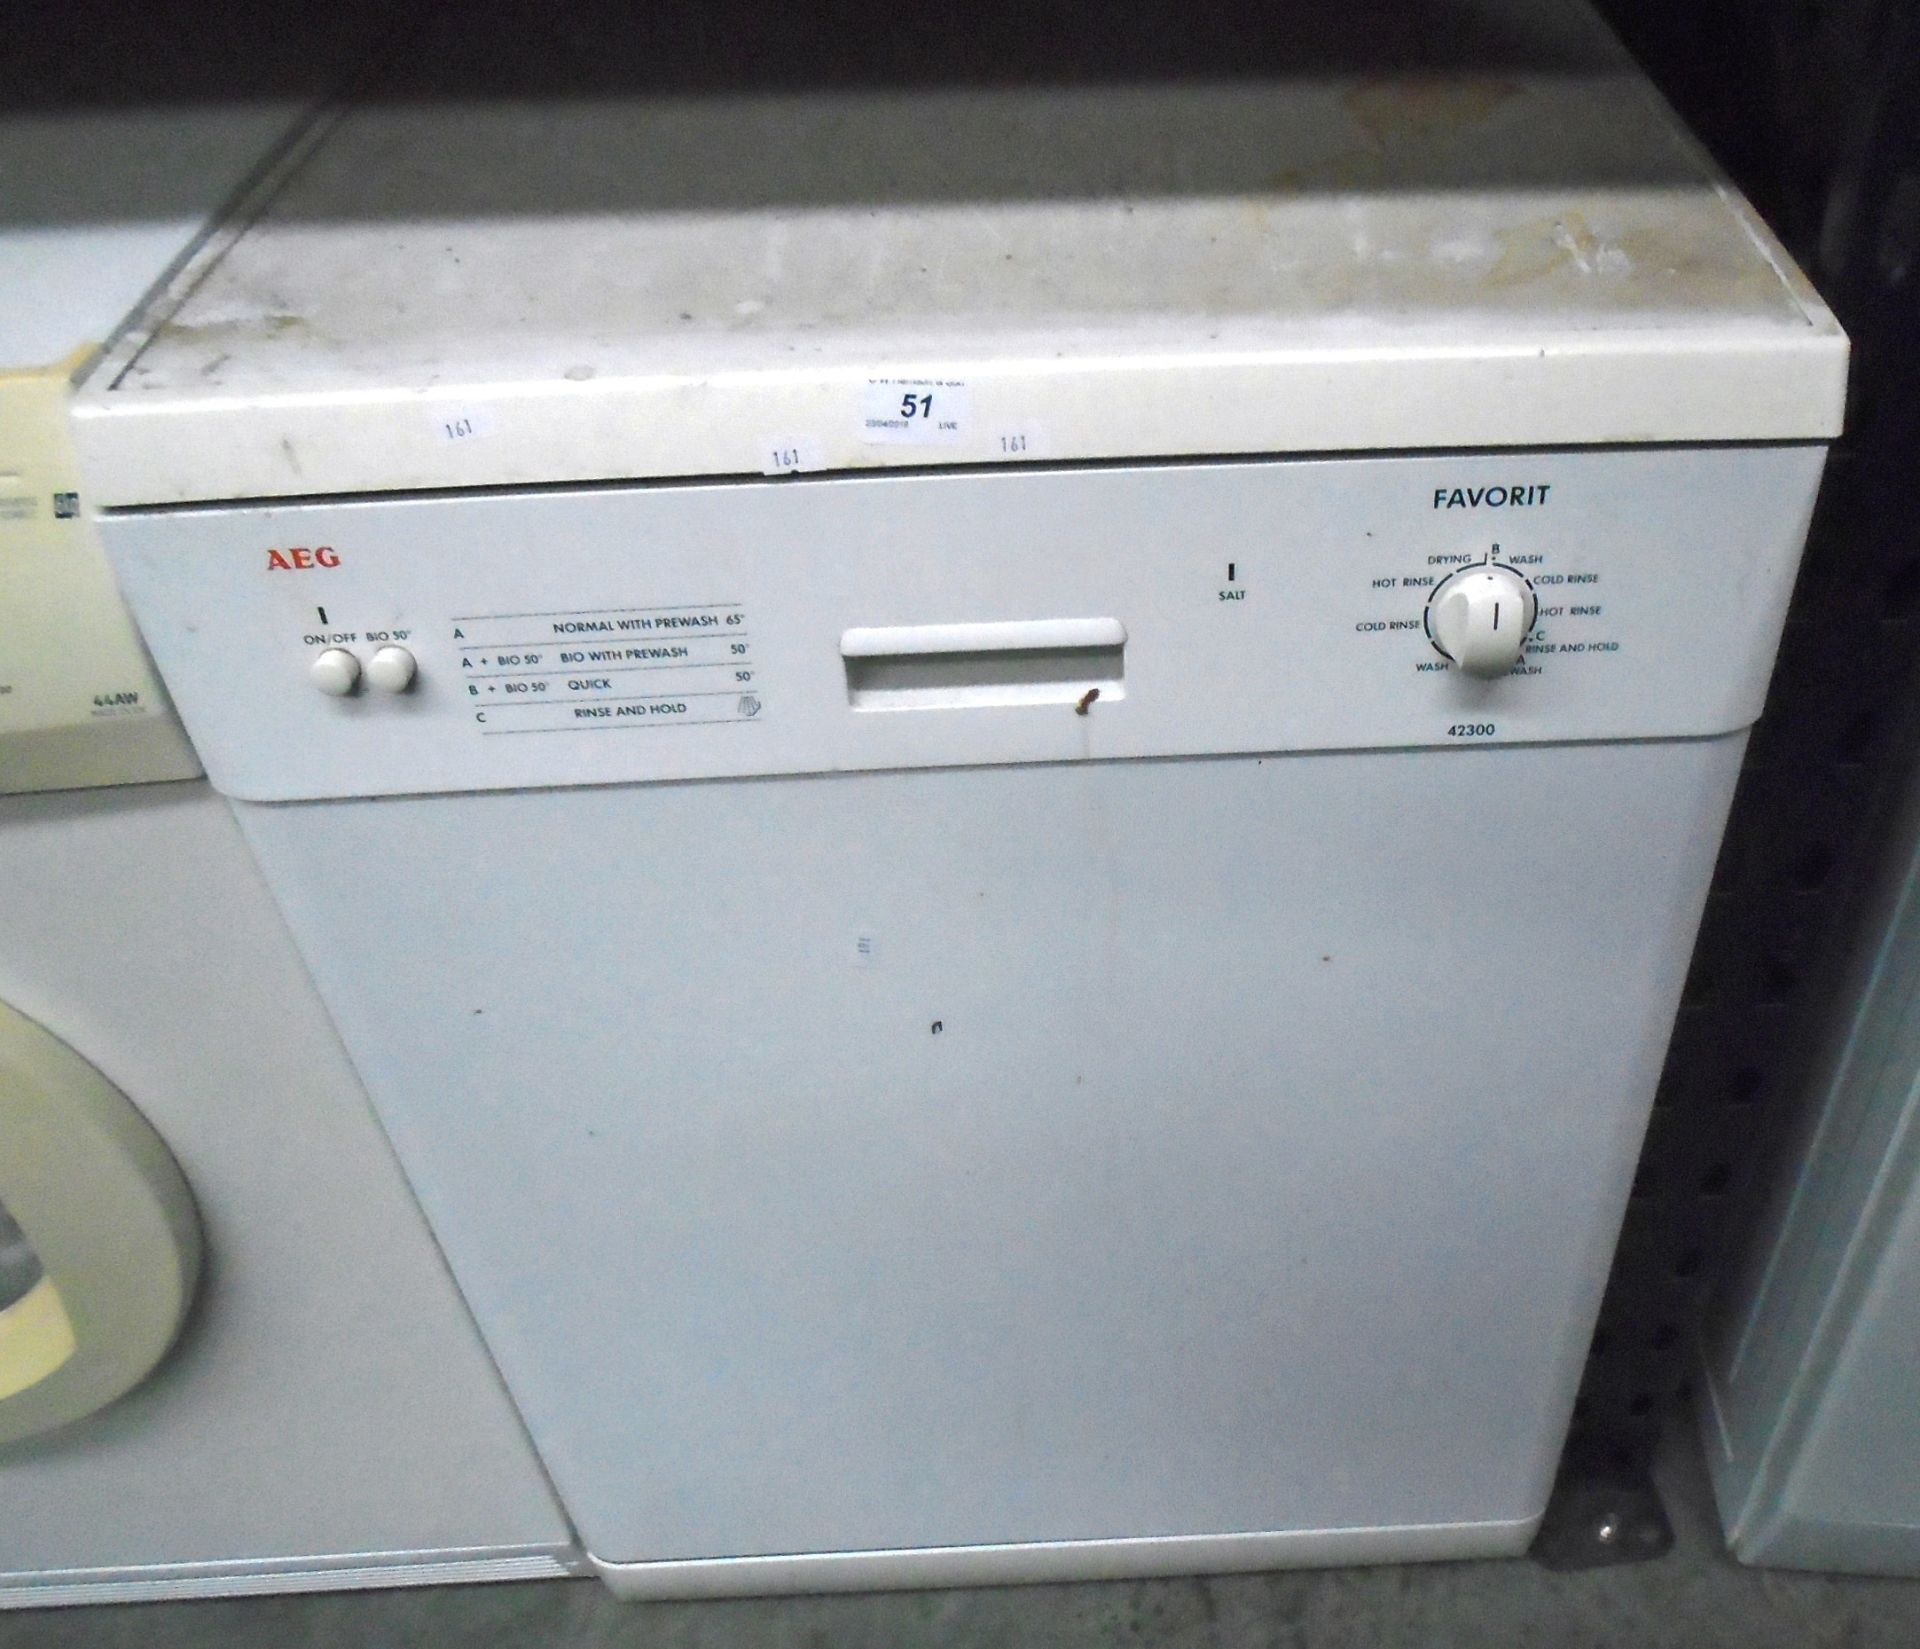 An AEG 42300 dishwasher